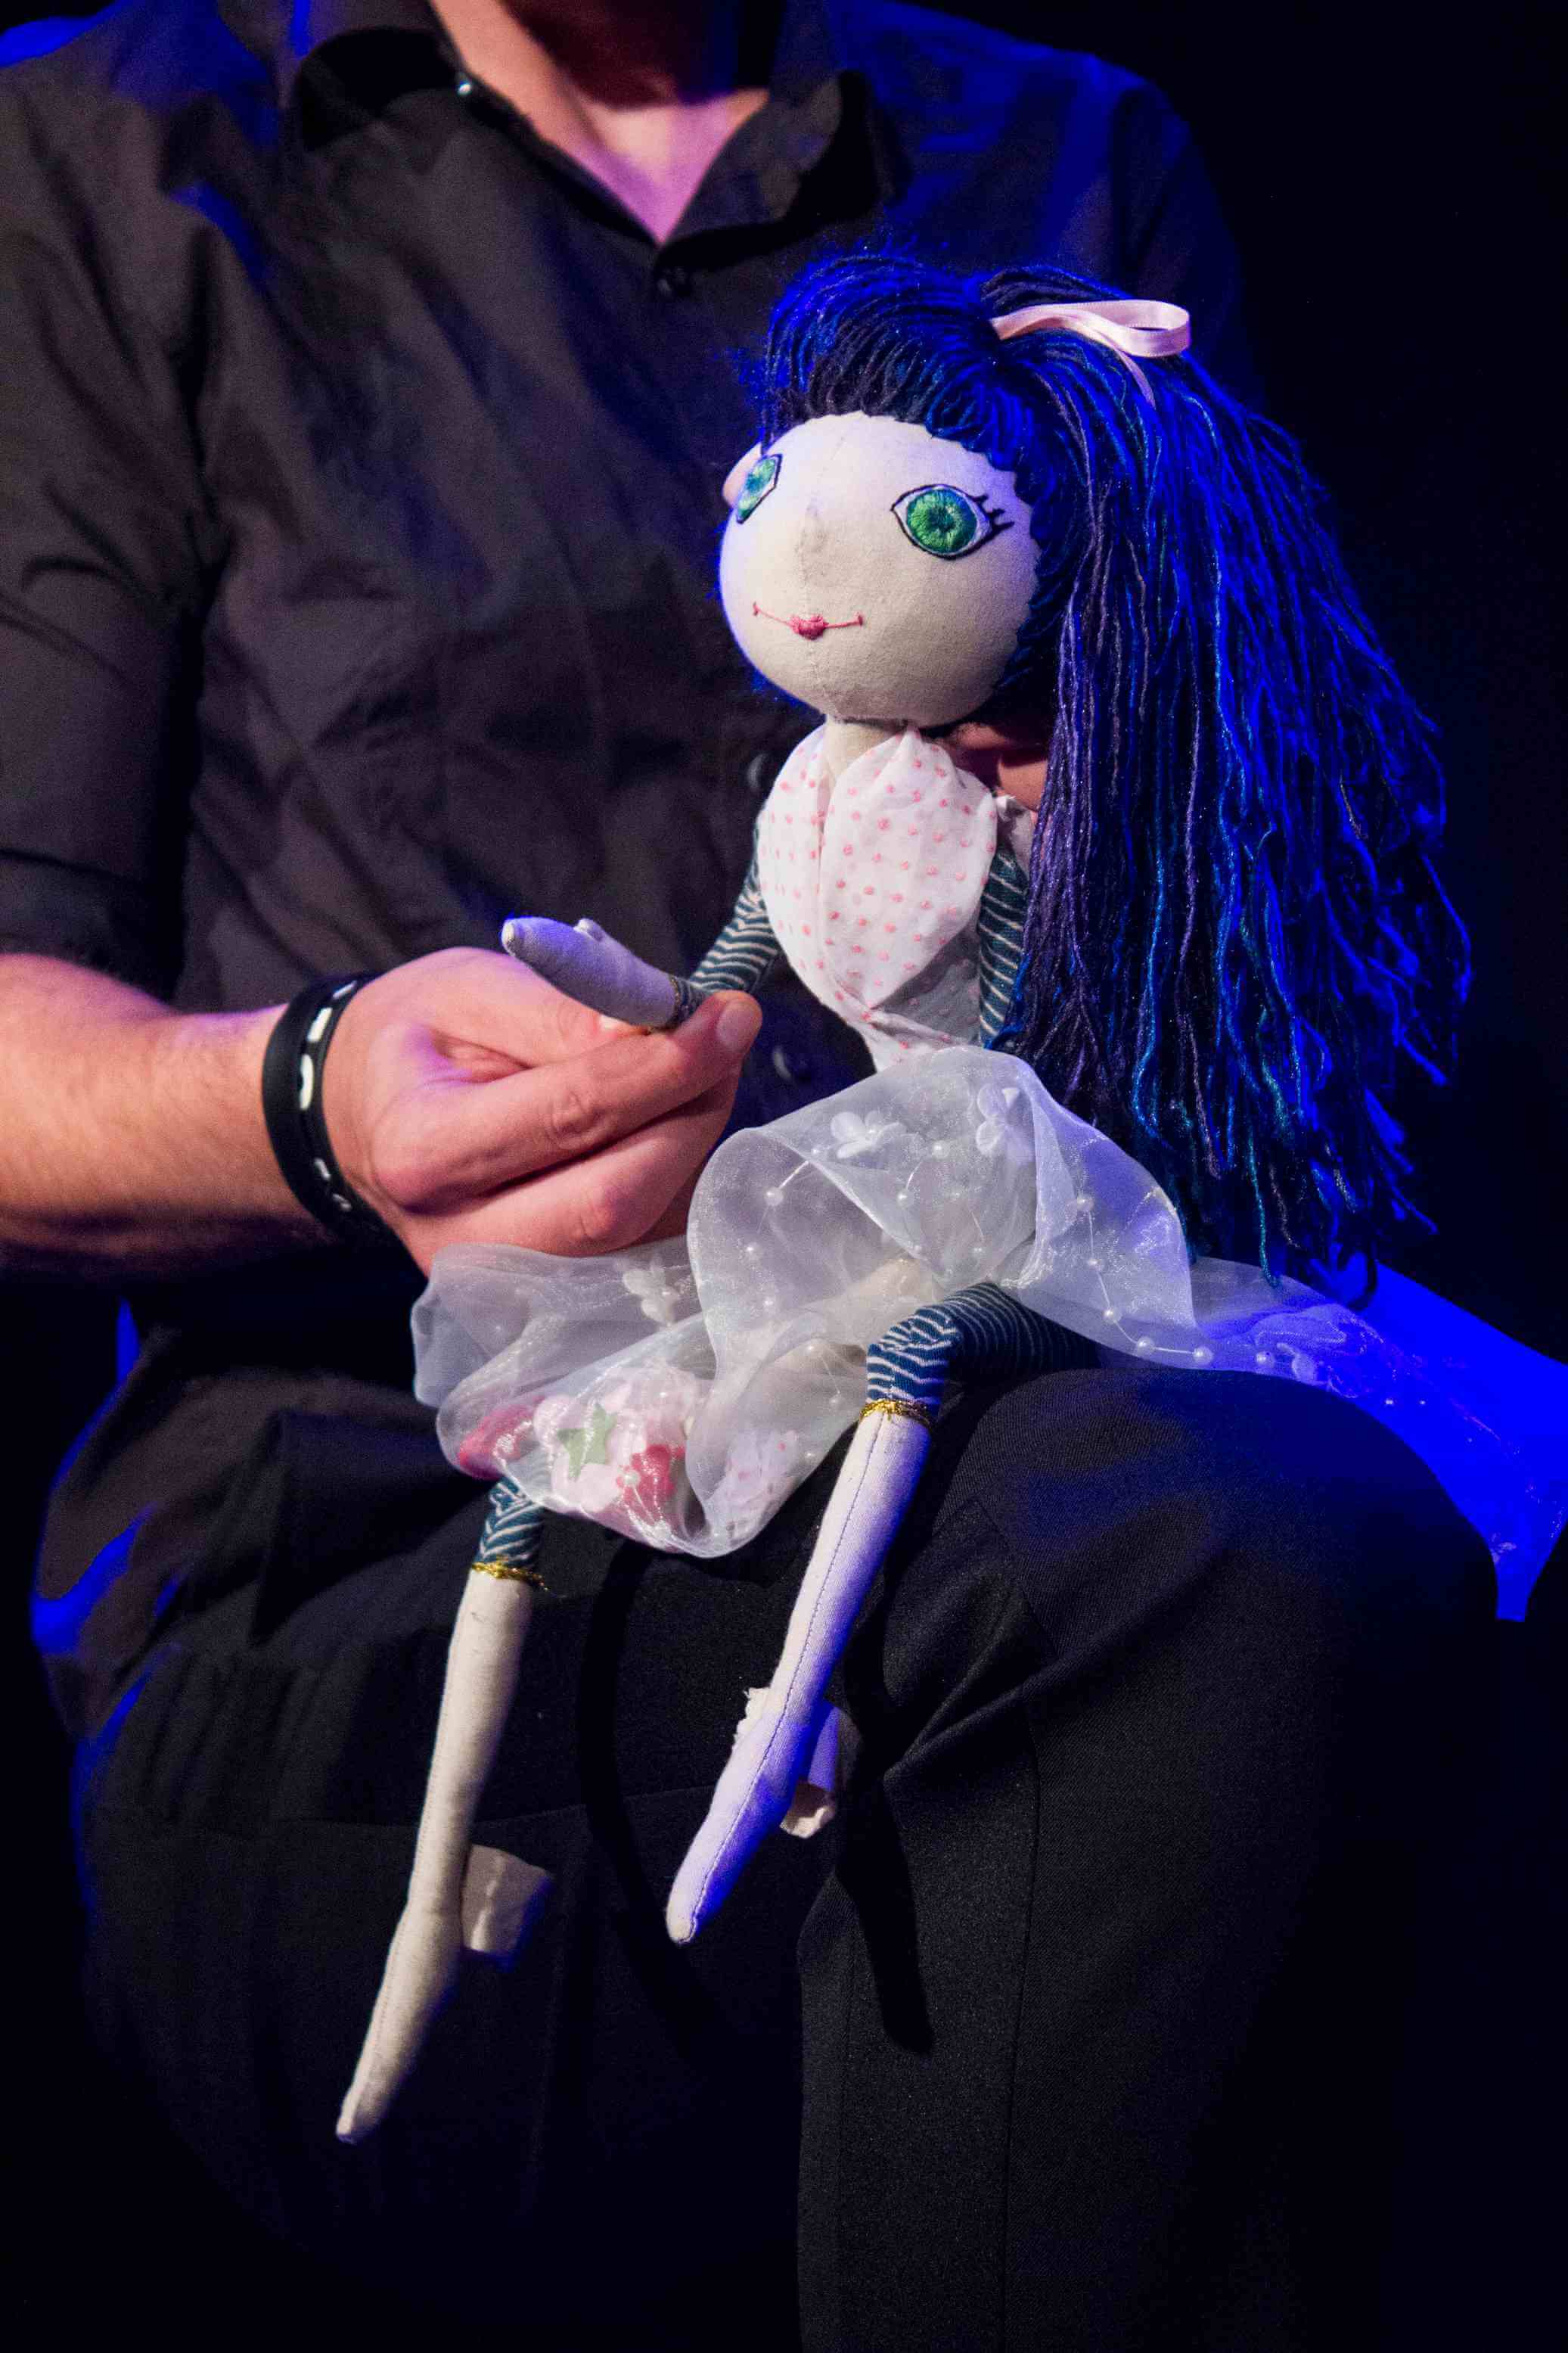 lalka siedząca na udzie animującego ją mężczyzny ubranego na czarno, mężczyzna trzyma w dłoni jedną z rąk lalki, lalka ma jasną sukienkę i niebieskie włosy, zielone oczy, czarne tło, pada niebieskie światło